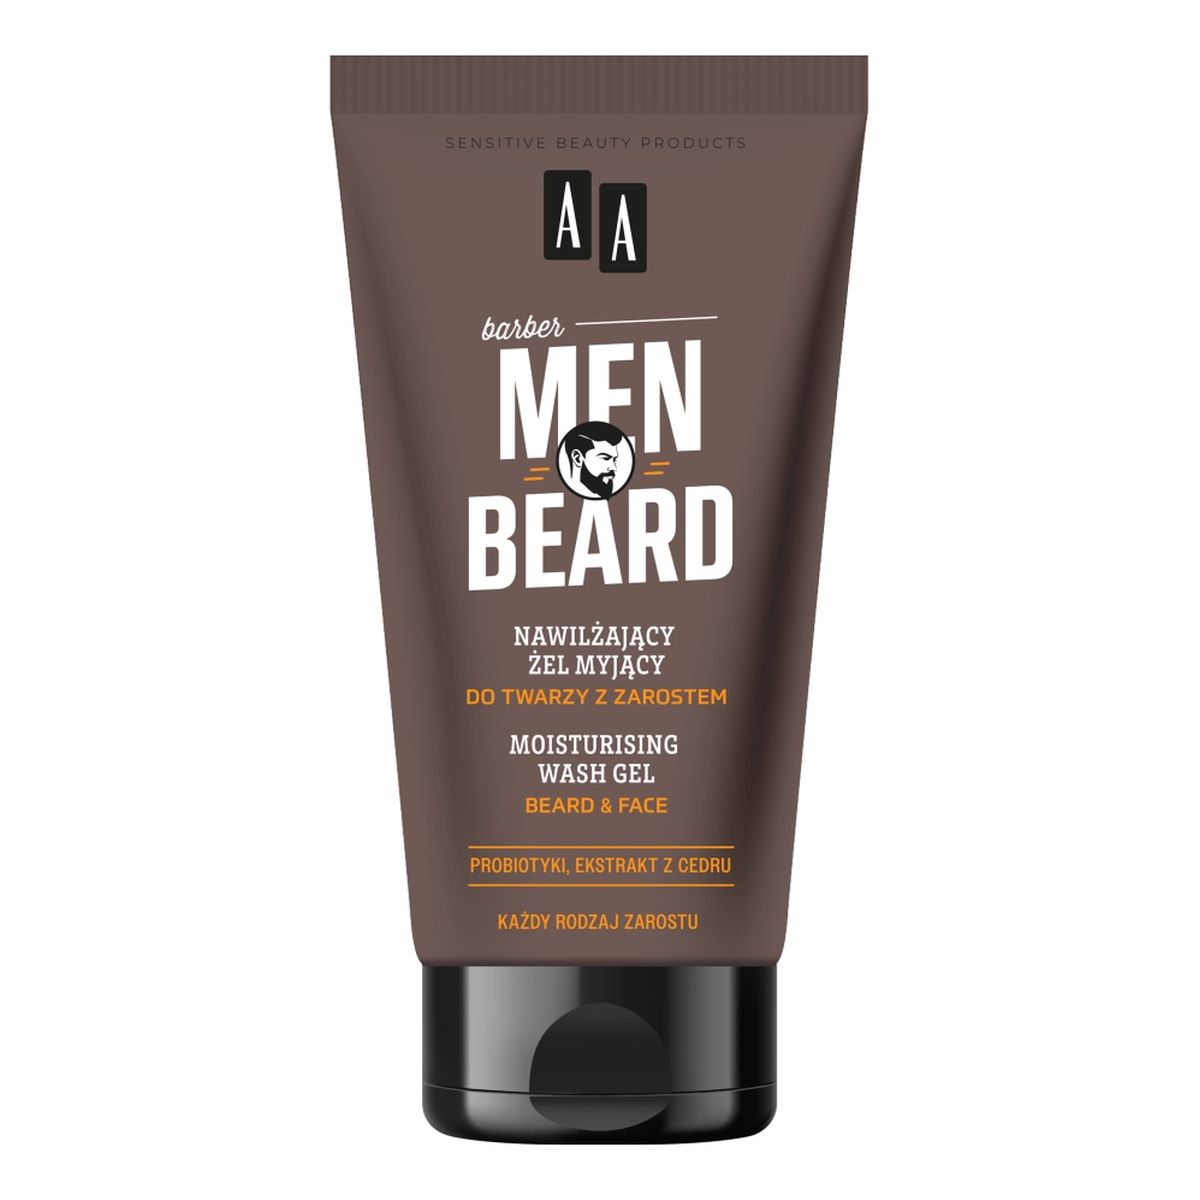 AA Men Beard nawilżający Żel myjący do twarzy z zarostem 150ml